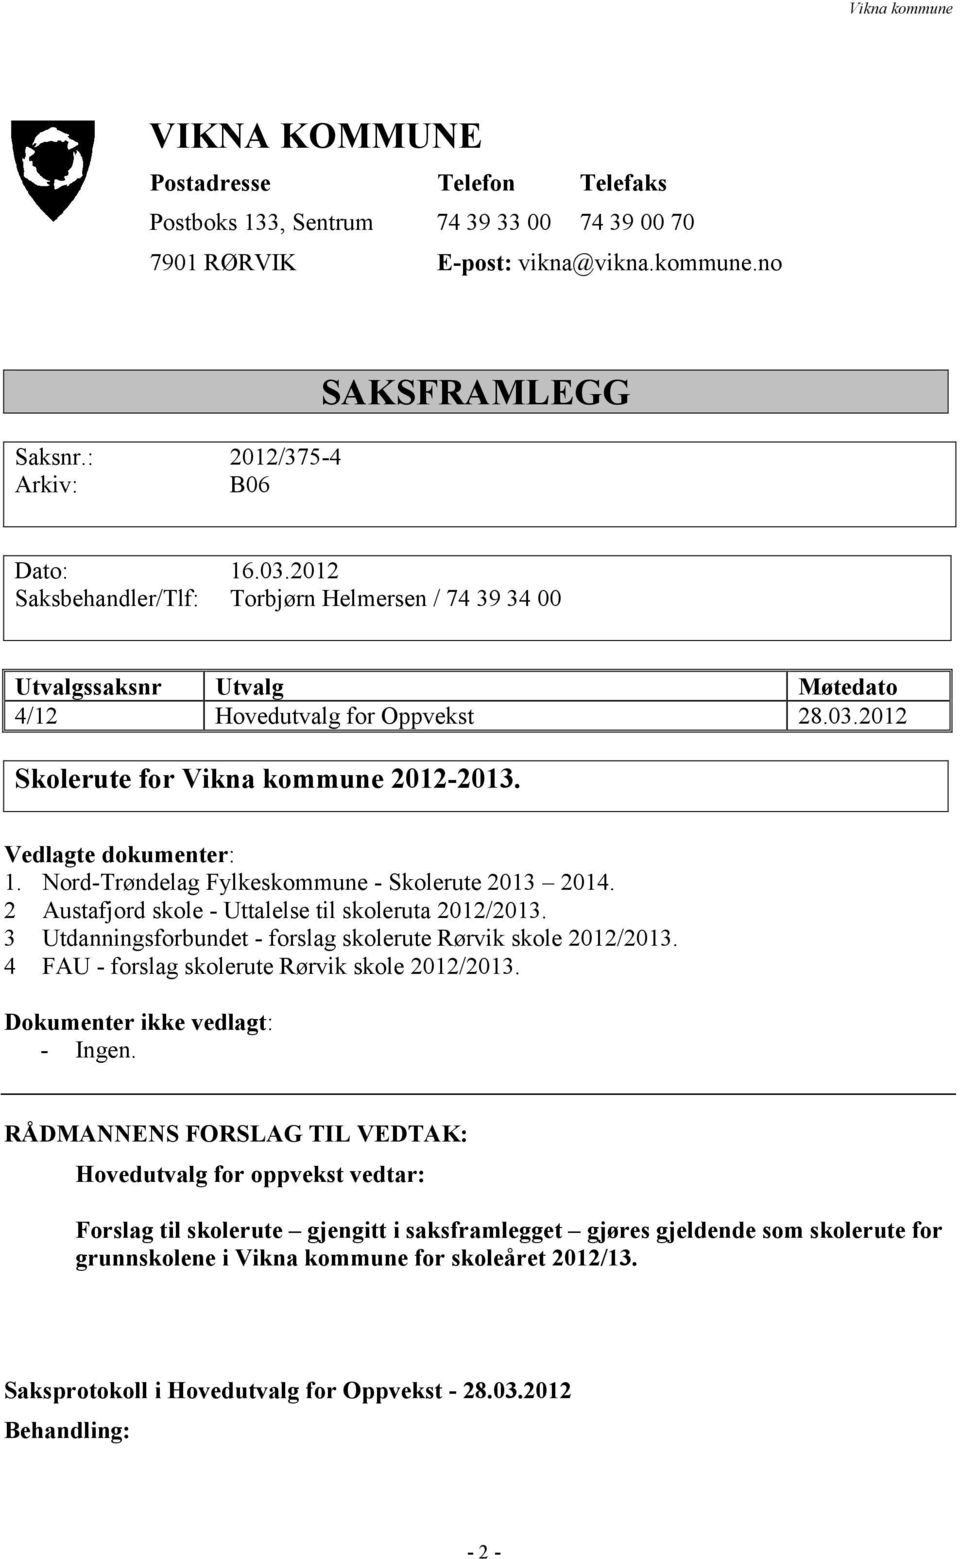 Nord-Trøndelag Fylkeskommune - Skolerute 2013 2014. 2 Austafjord skole - Uttalelse til skoleruta 2012/2013. 3 Utdanningsforbundet - forslag skolerute Rørvik skole 2012/2013.